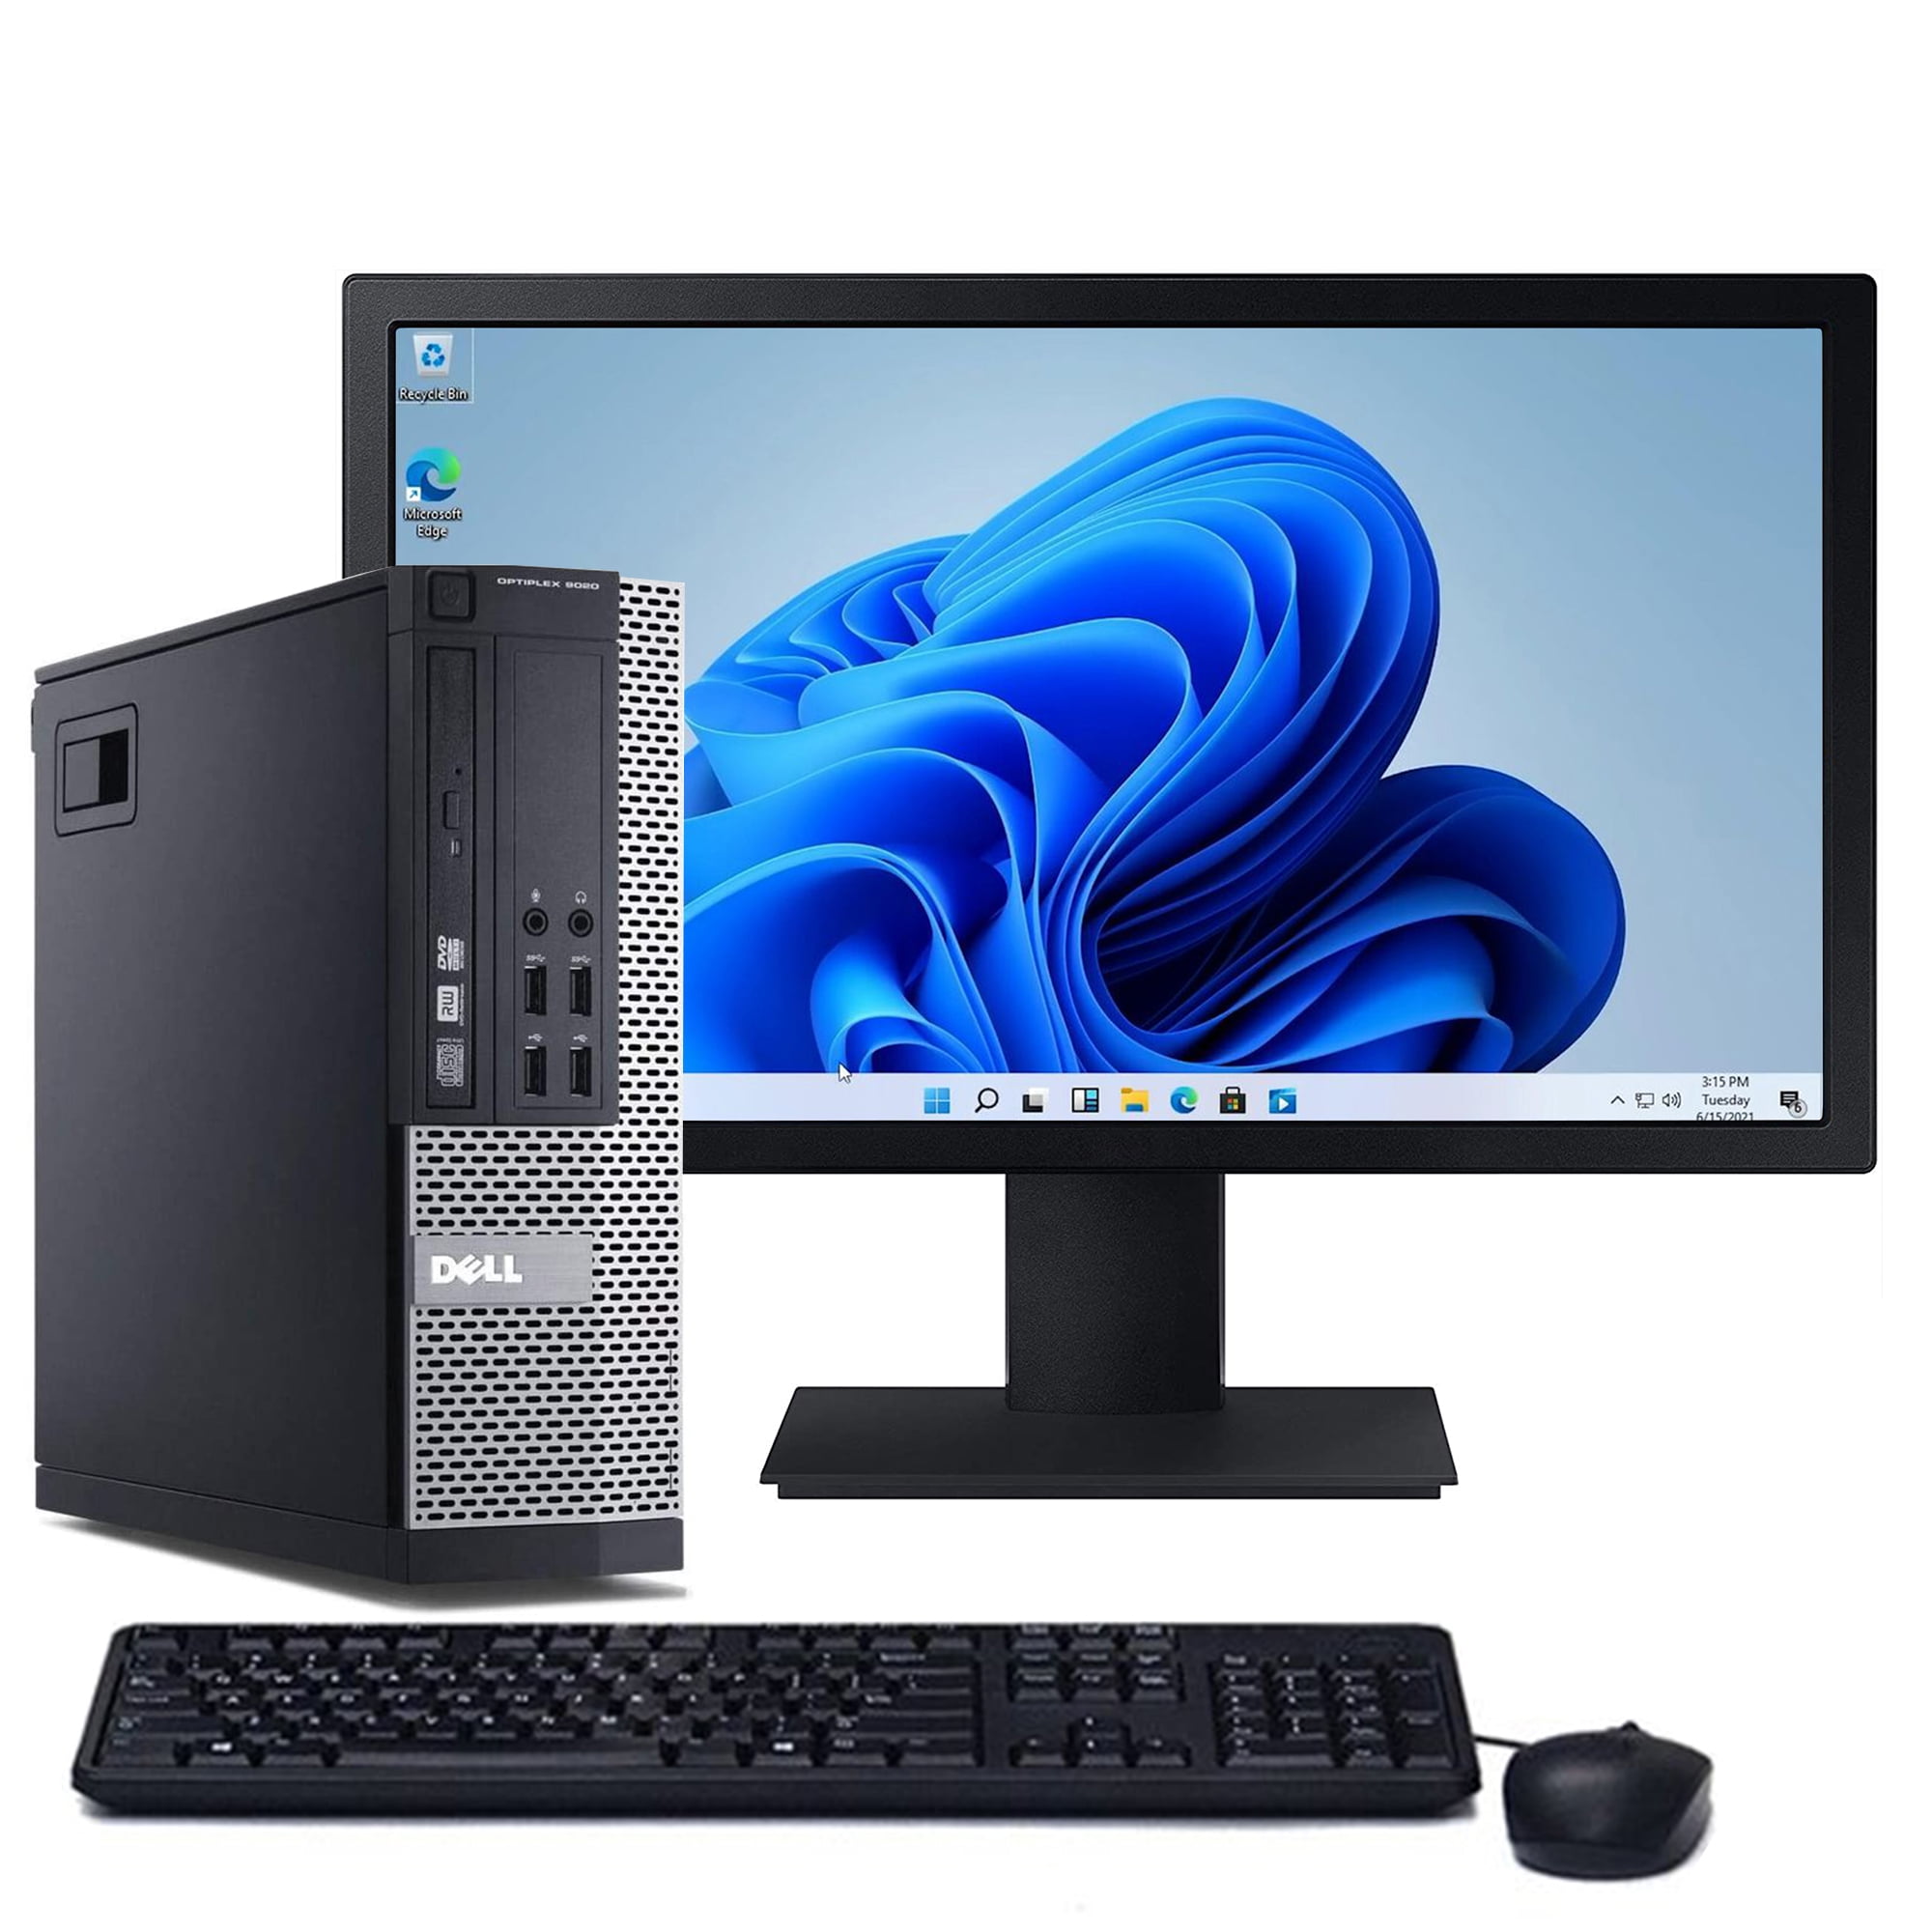 An image of a desktop computer.